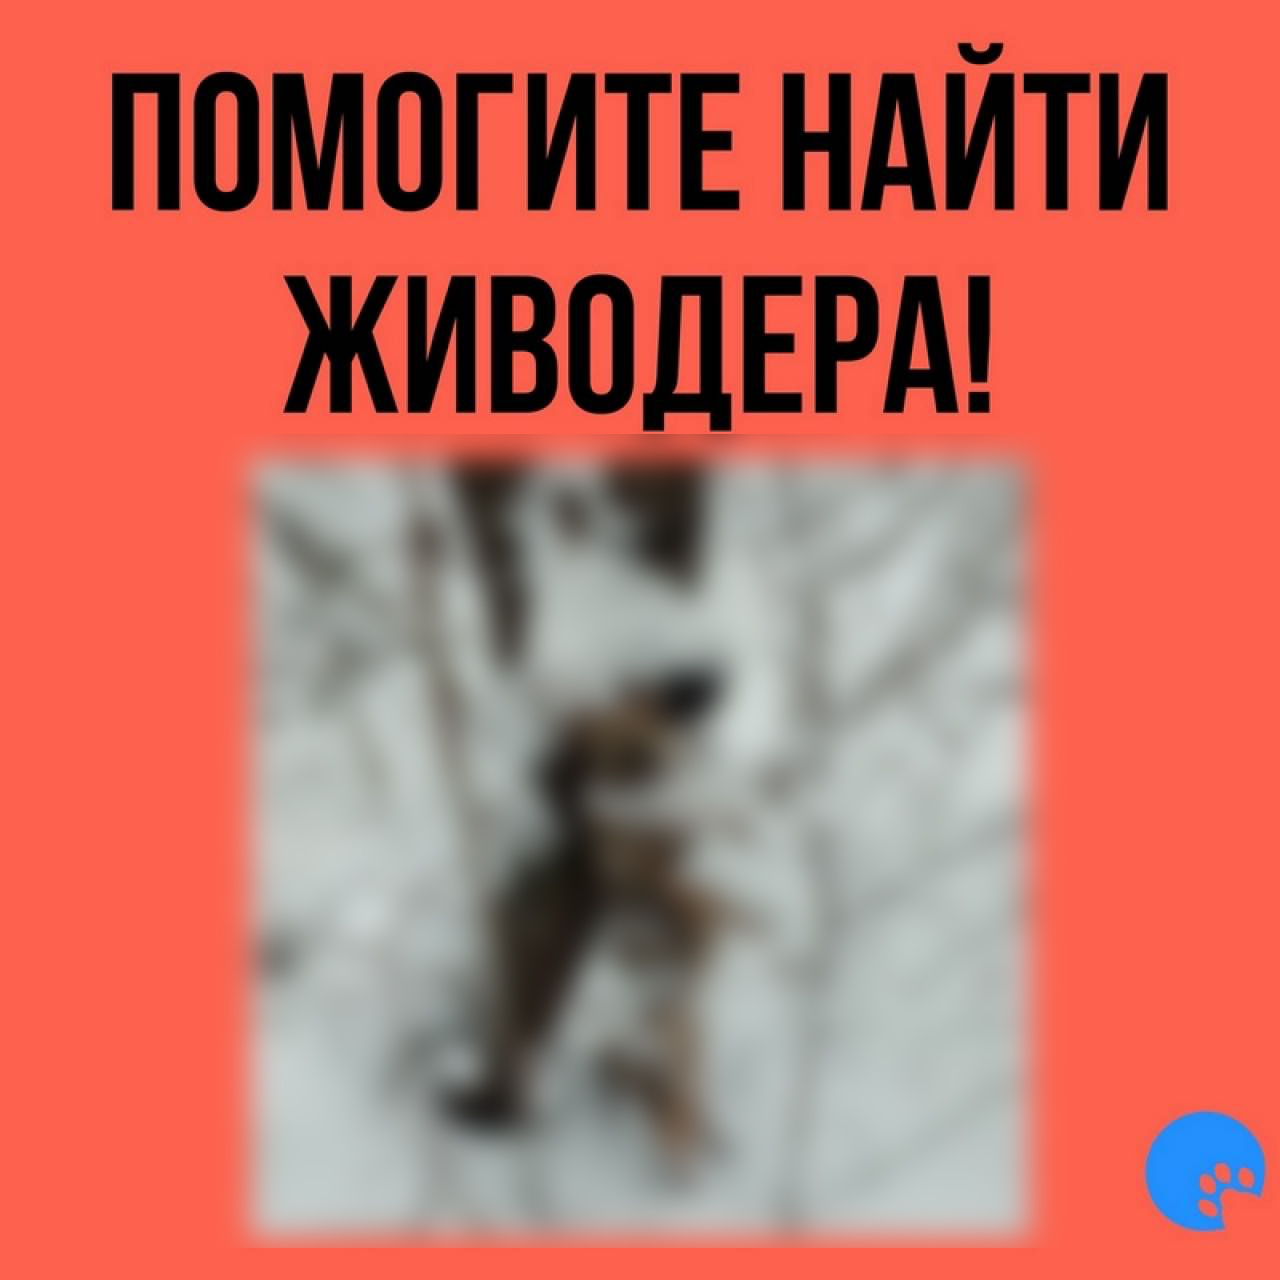 В Пышках нашли повешенную собаку: она превратилась в лед (18+)